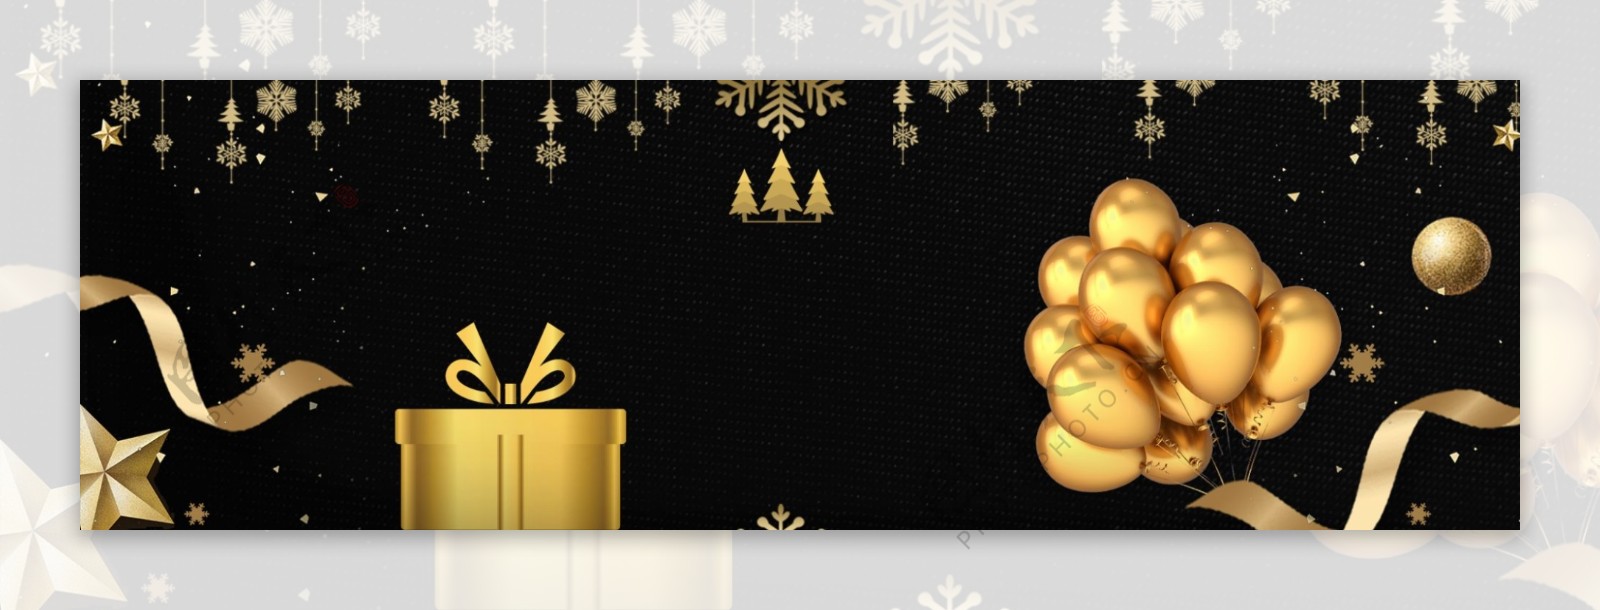 黑金圣诞节促销卡通banner背景